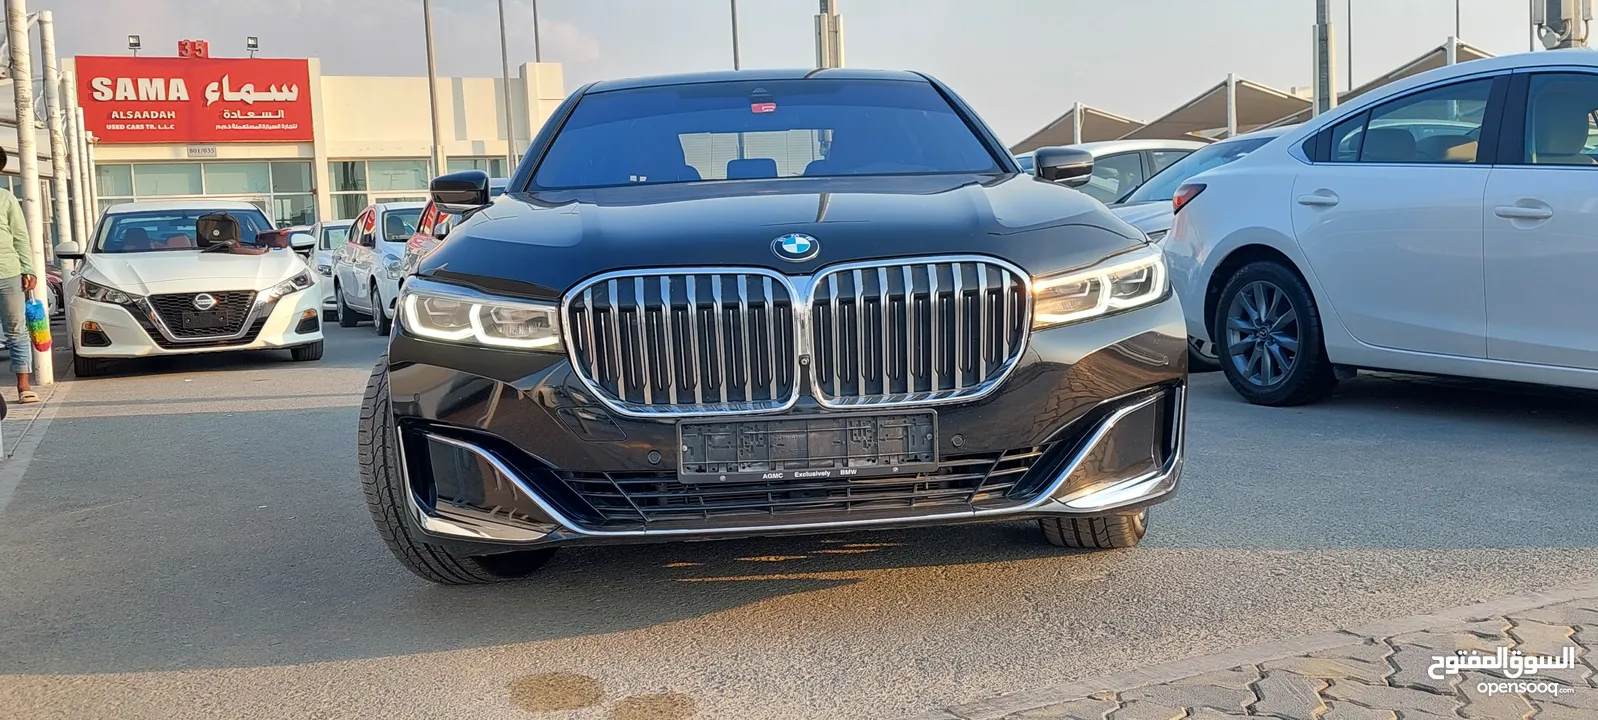 بي ام دبليو BMW 730LI 2020 خليجي